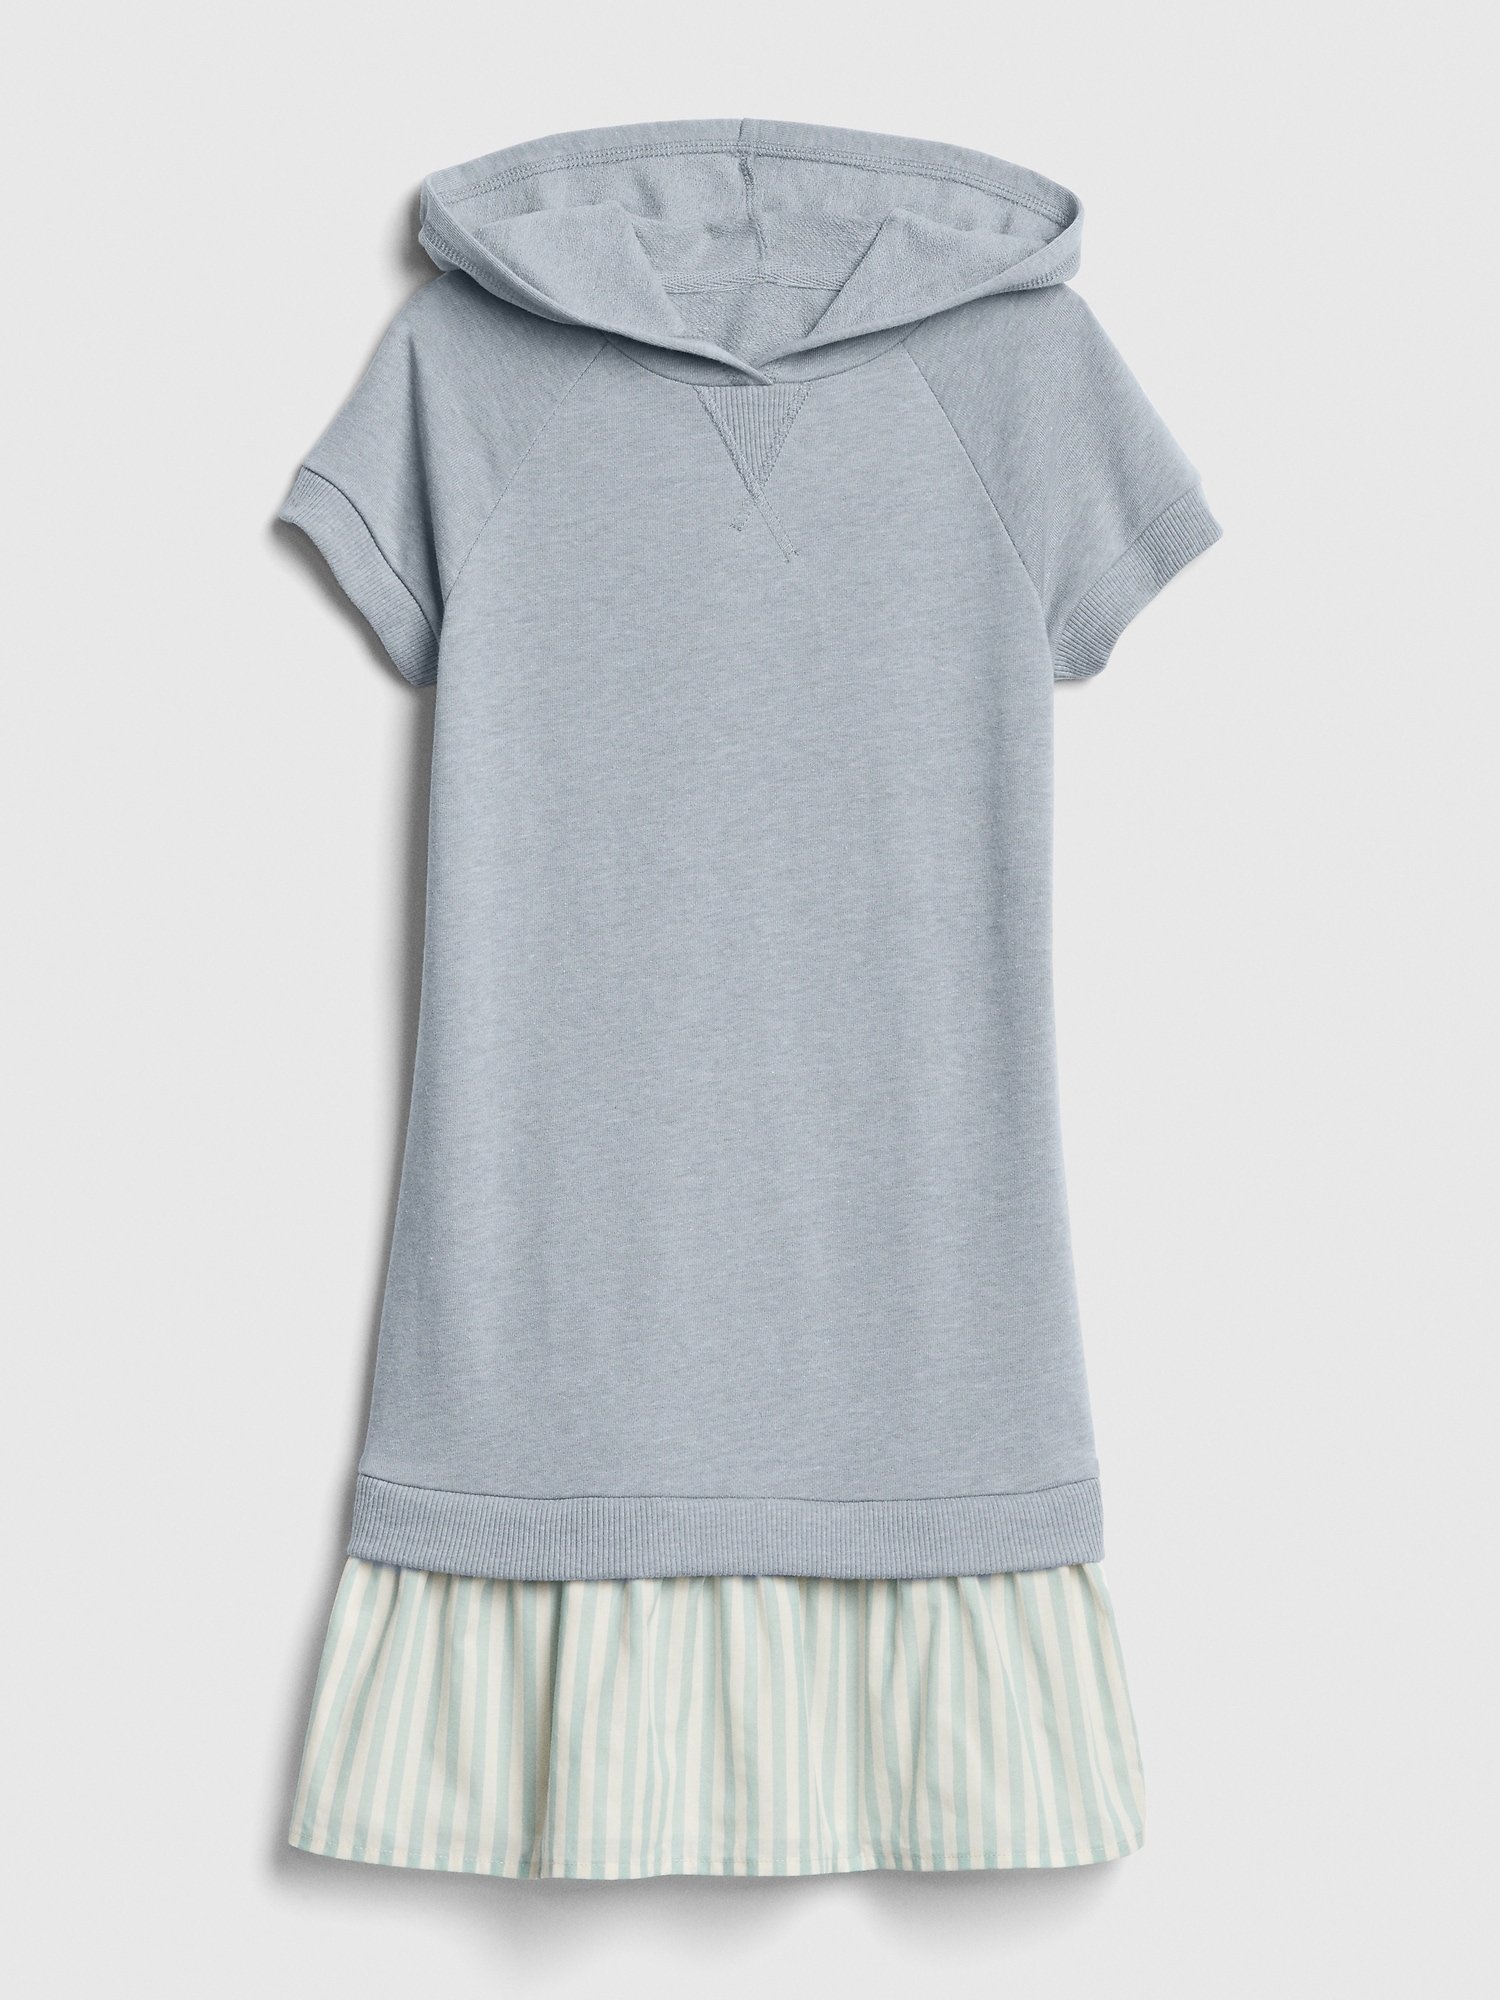 Kumaş Kapüşonlu Elbise product image